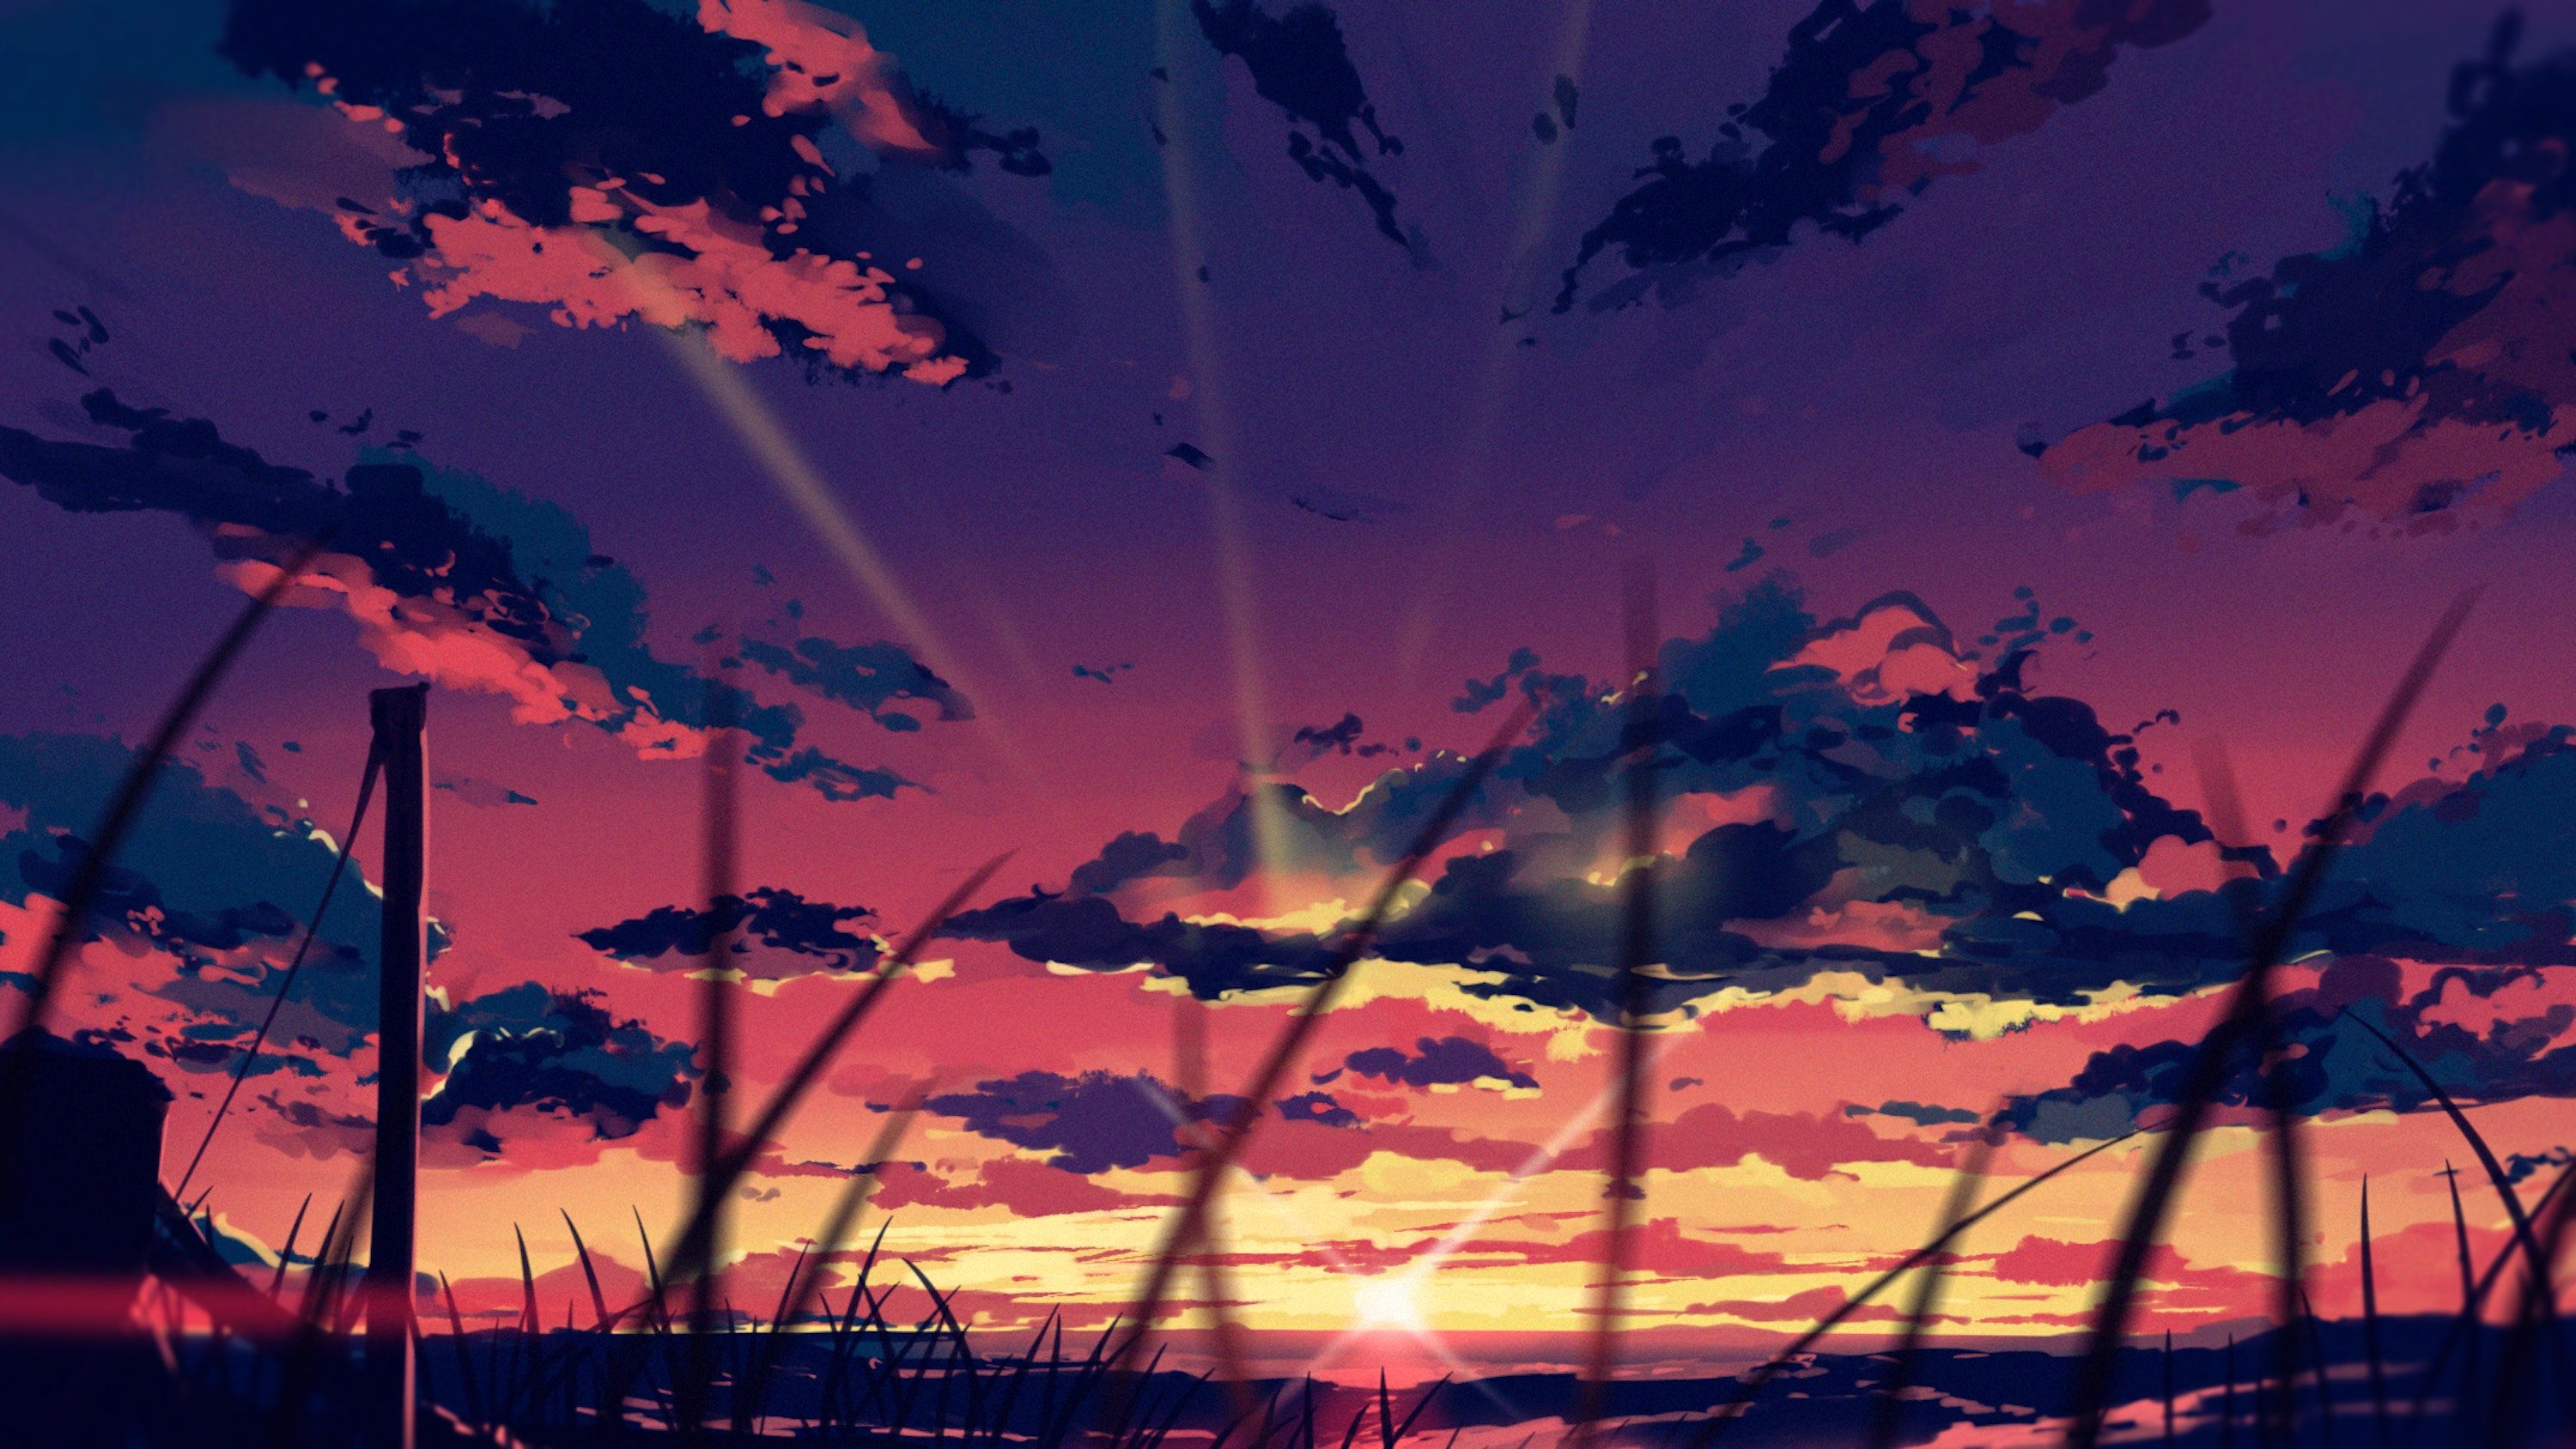 Arttssam, digital art, artwork, illustration, sunset, landscape, clouds, sunset glowx1688 Wallpaper